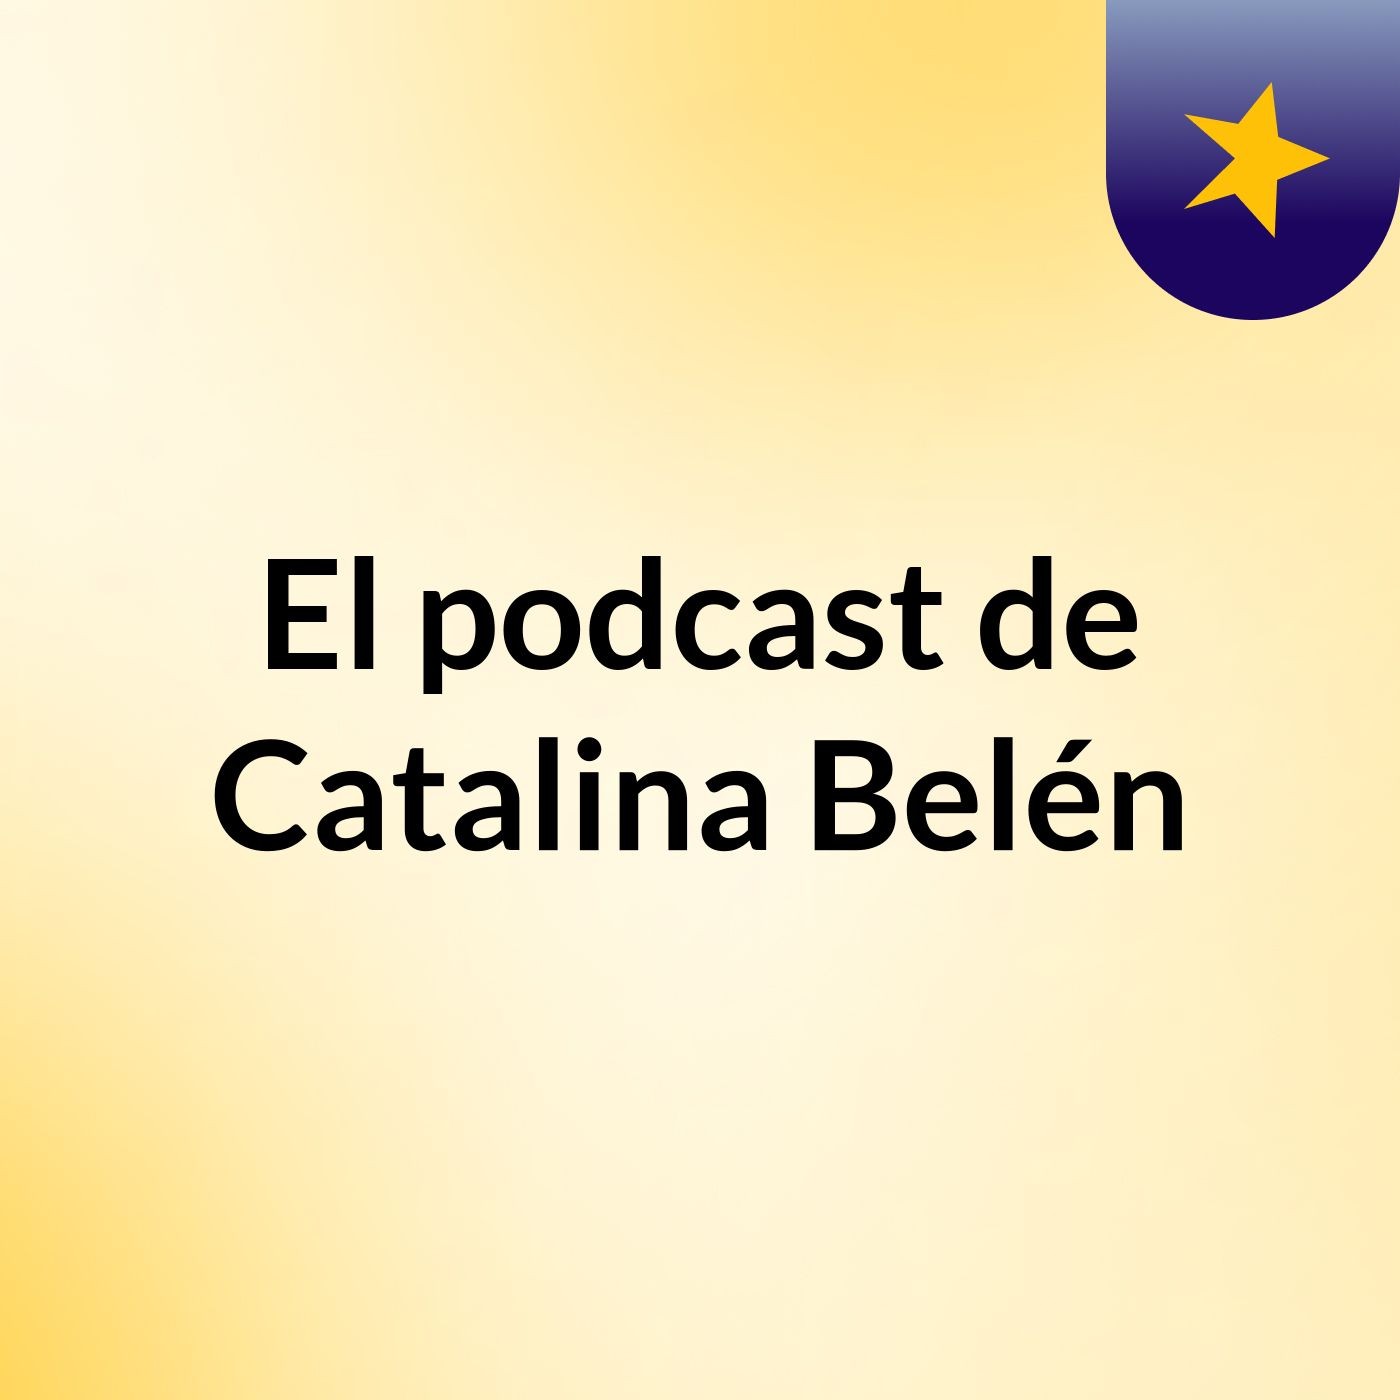 Episodio 4 - El podcast de Catalina Belén